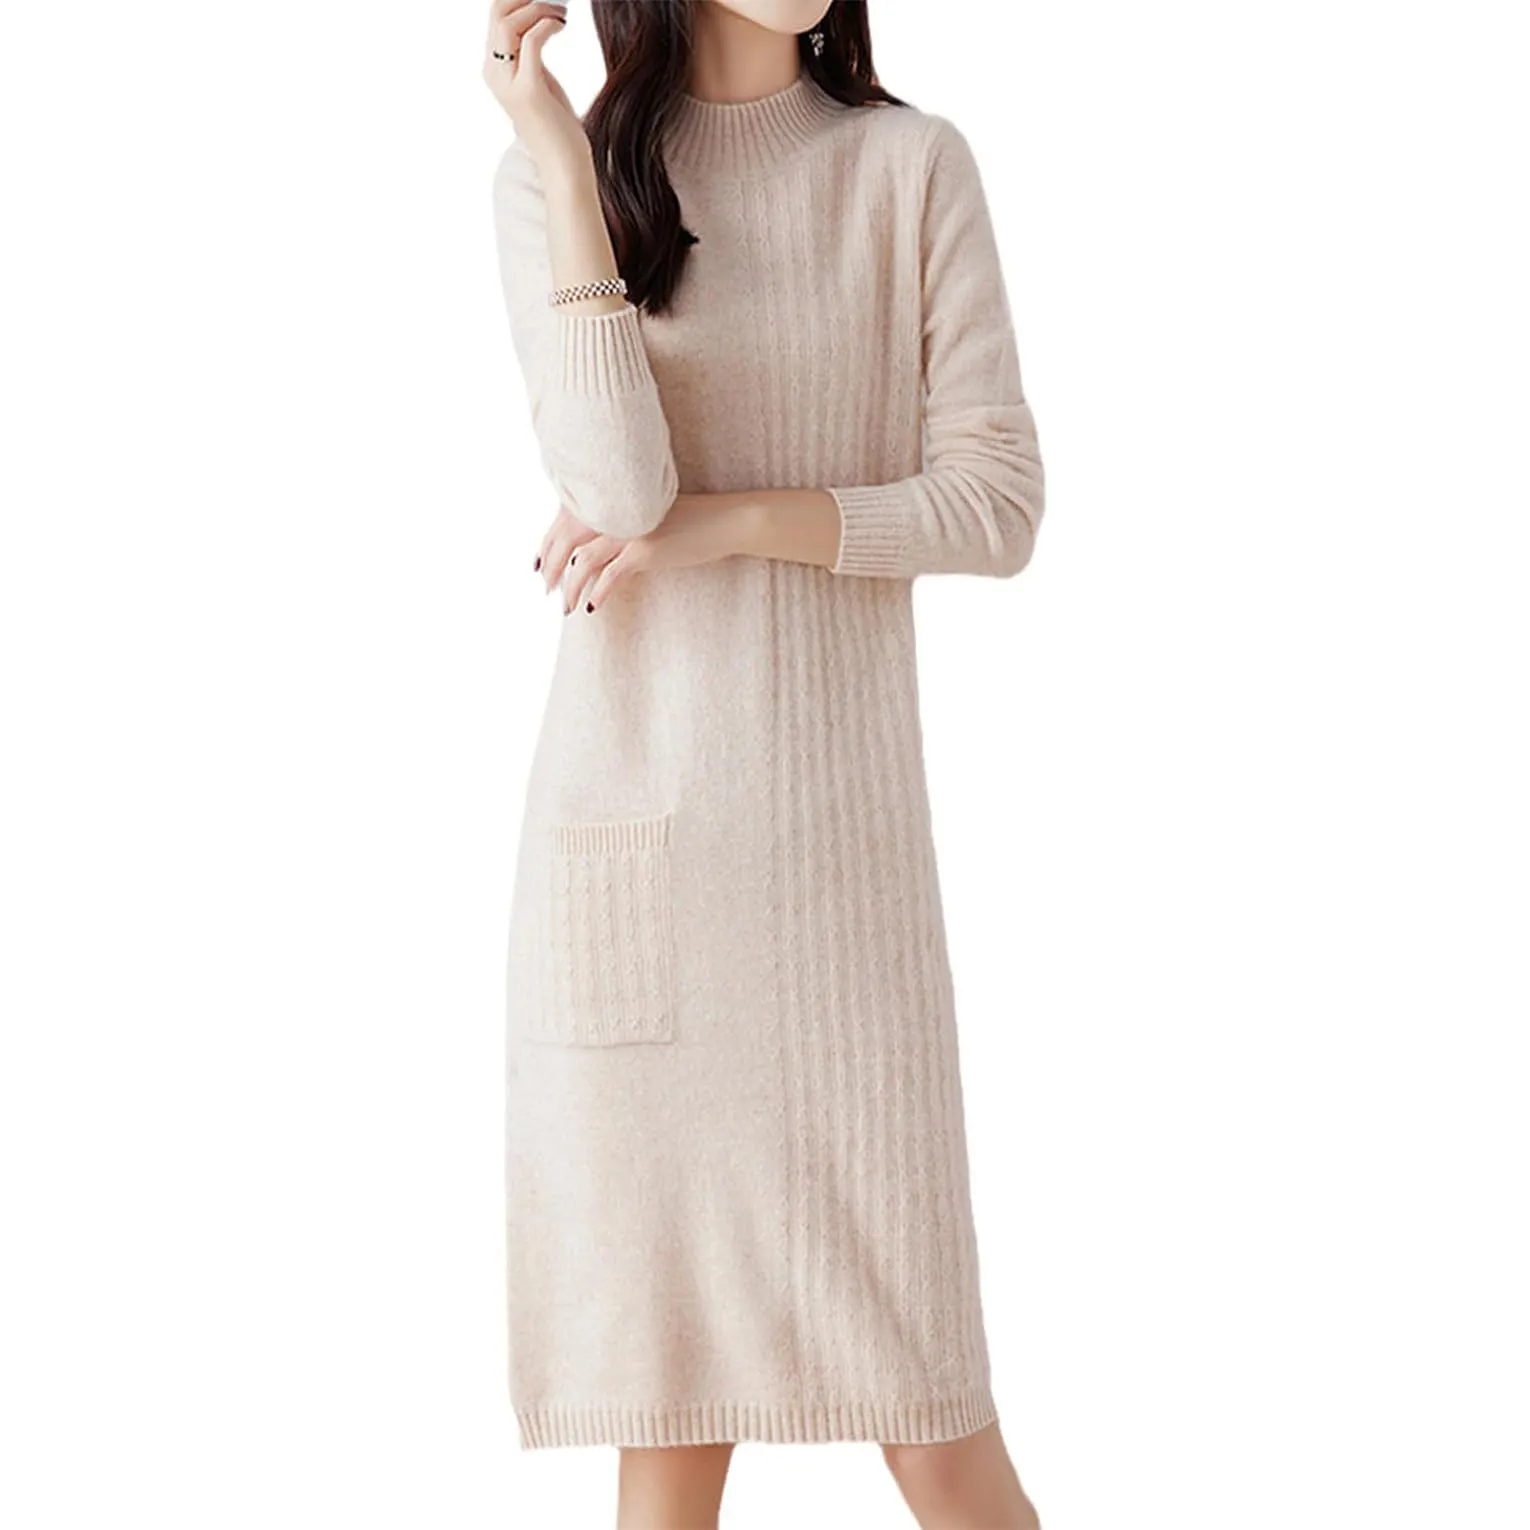 महिला स्वेटर बुना हुआ लंबी मैक्सी कपड़े